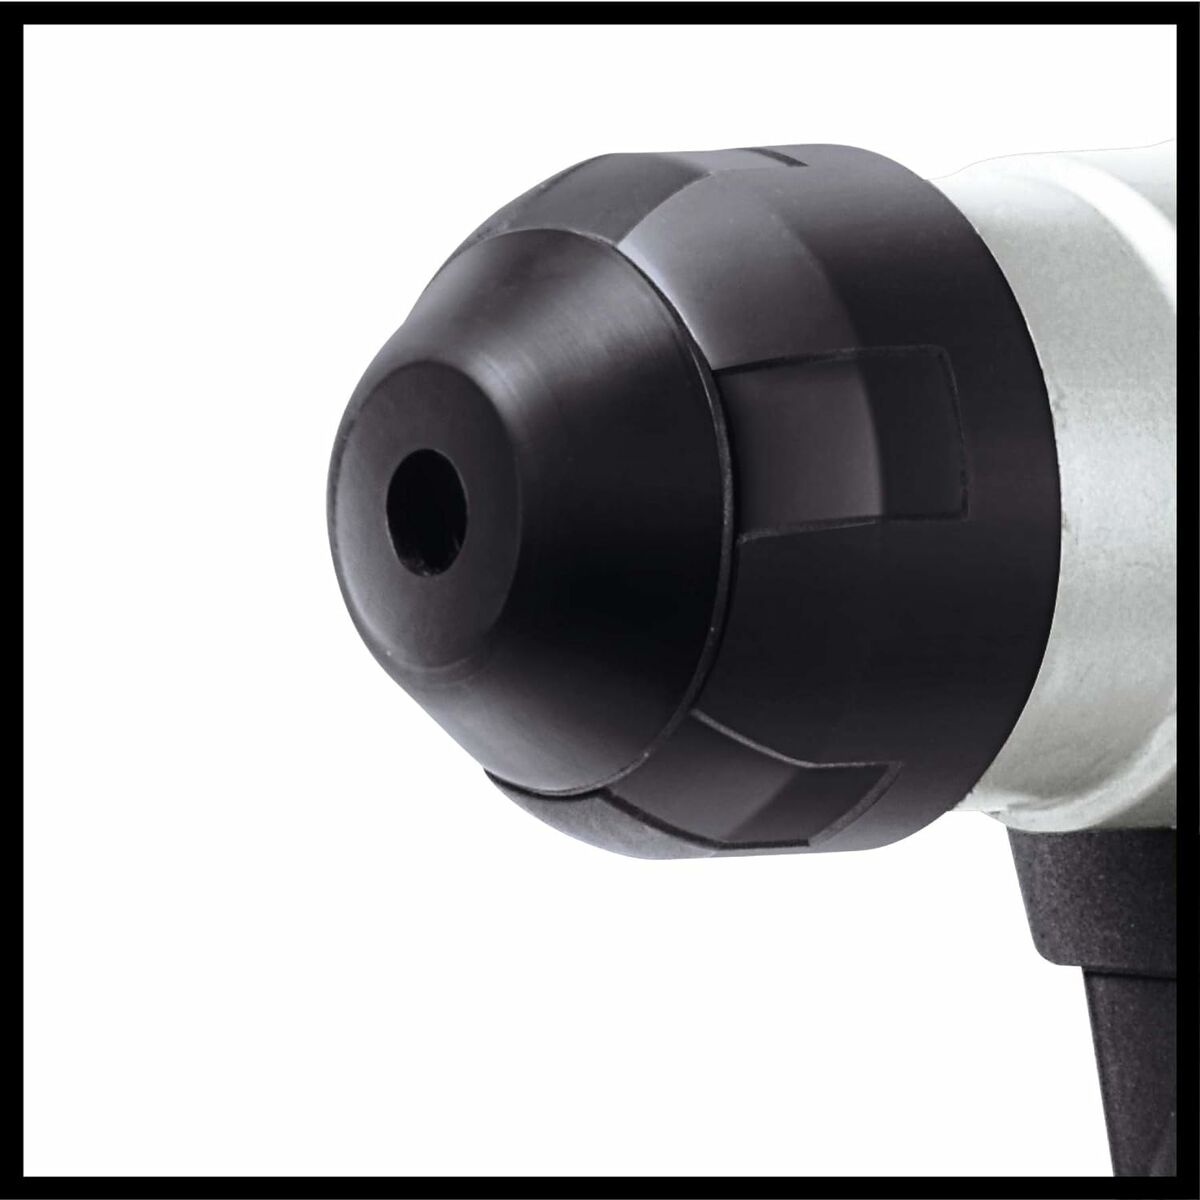 Perforācijas āmurs Einhell TH-RH 900/1 900 W 850 rpm 4100 RPM Perforators